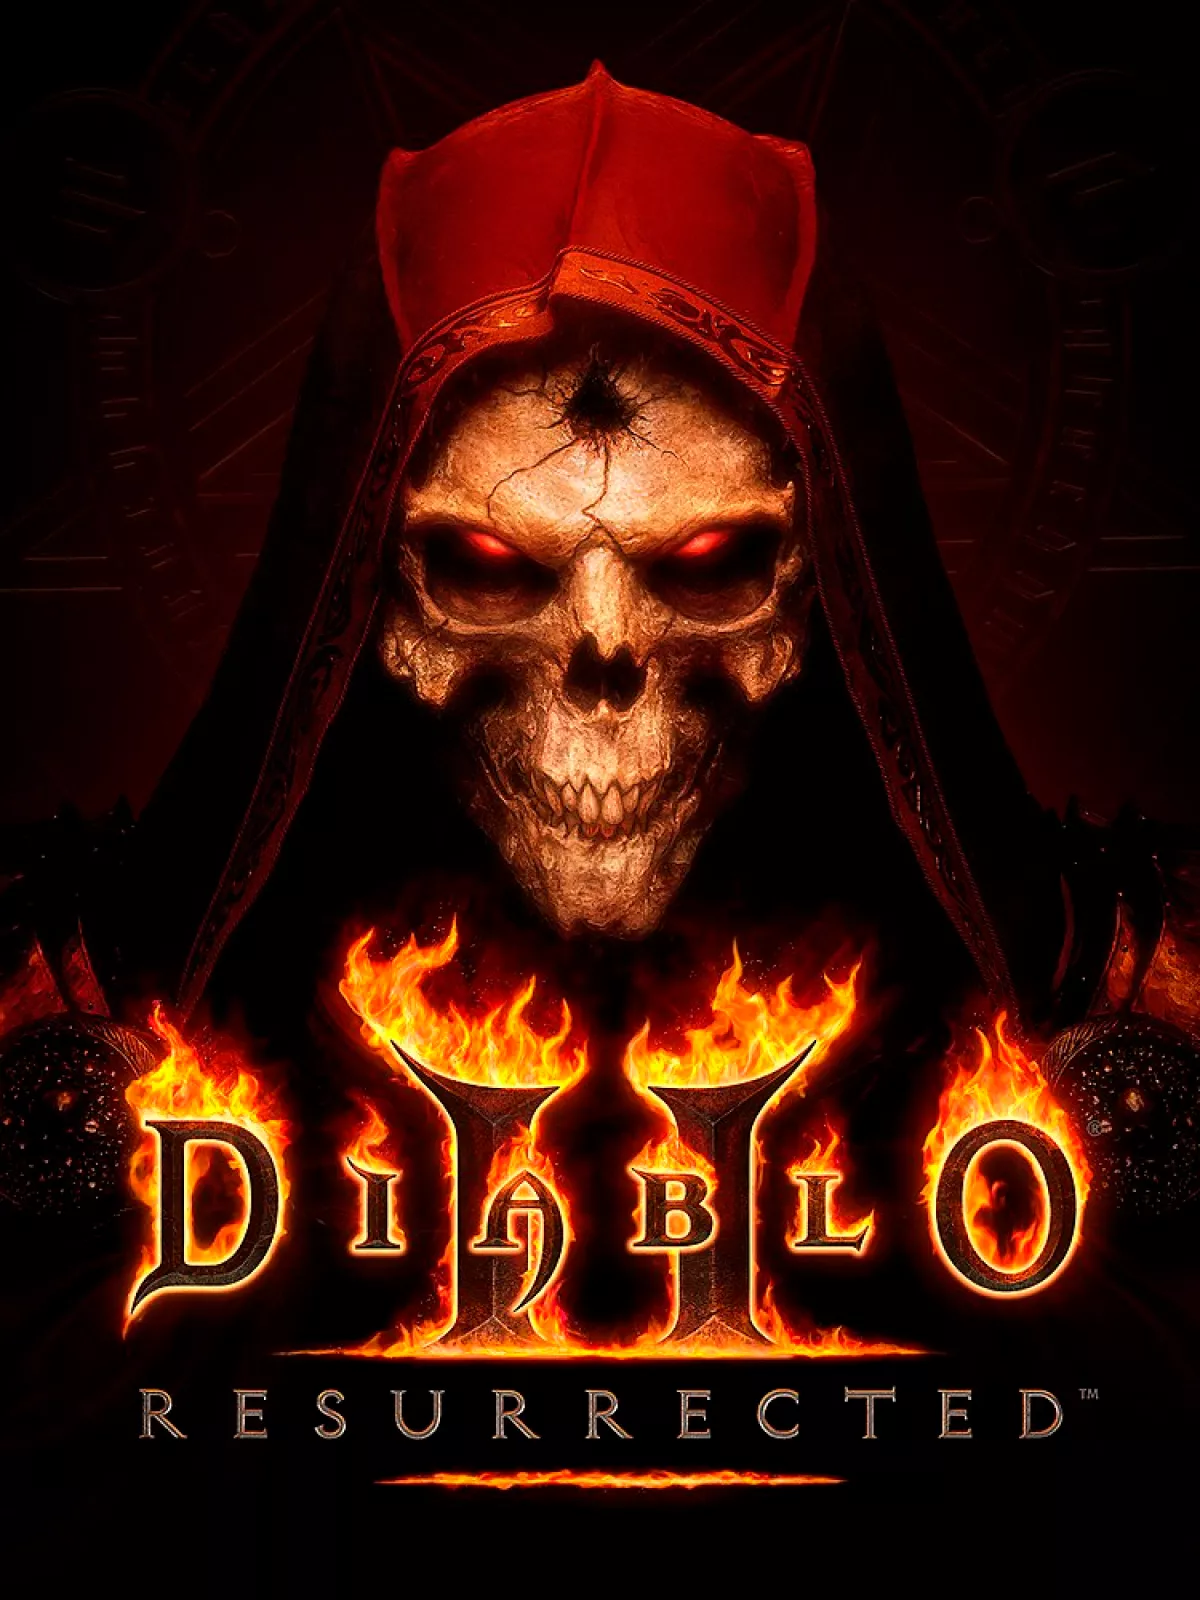 Diablo 2 Resurrected: системные требования и выбор ПК